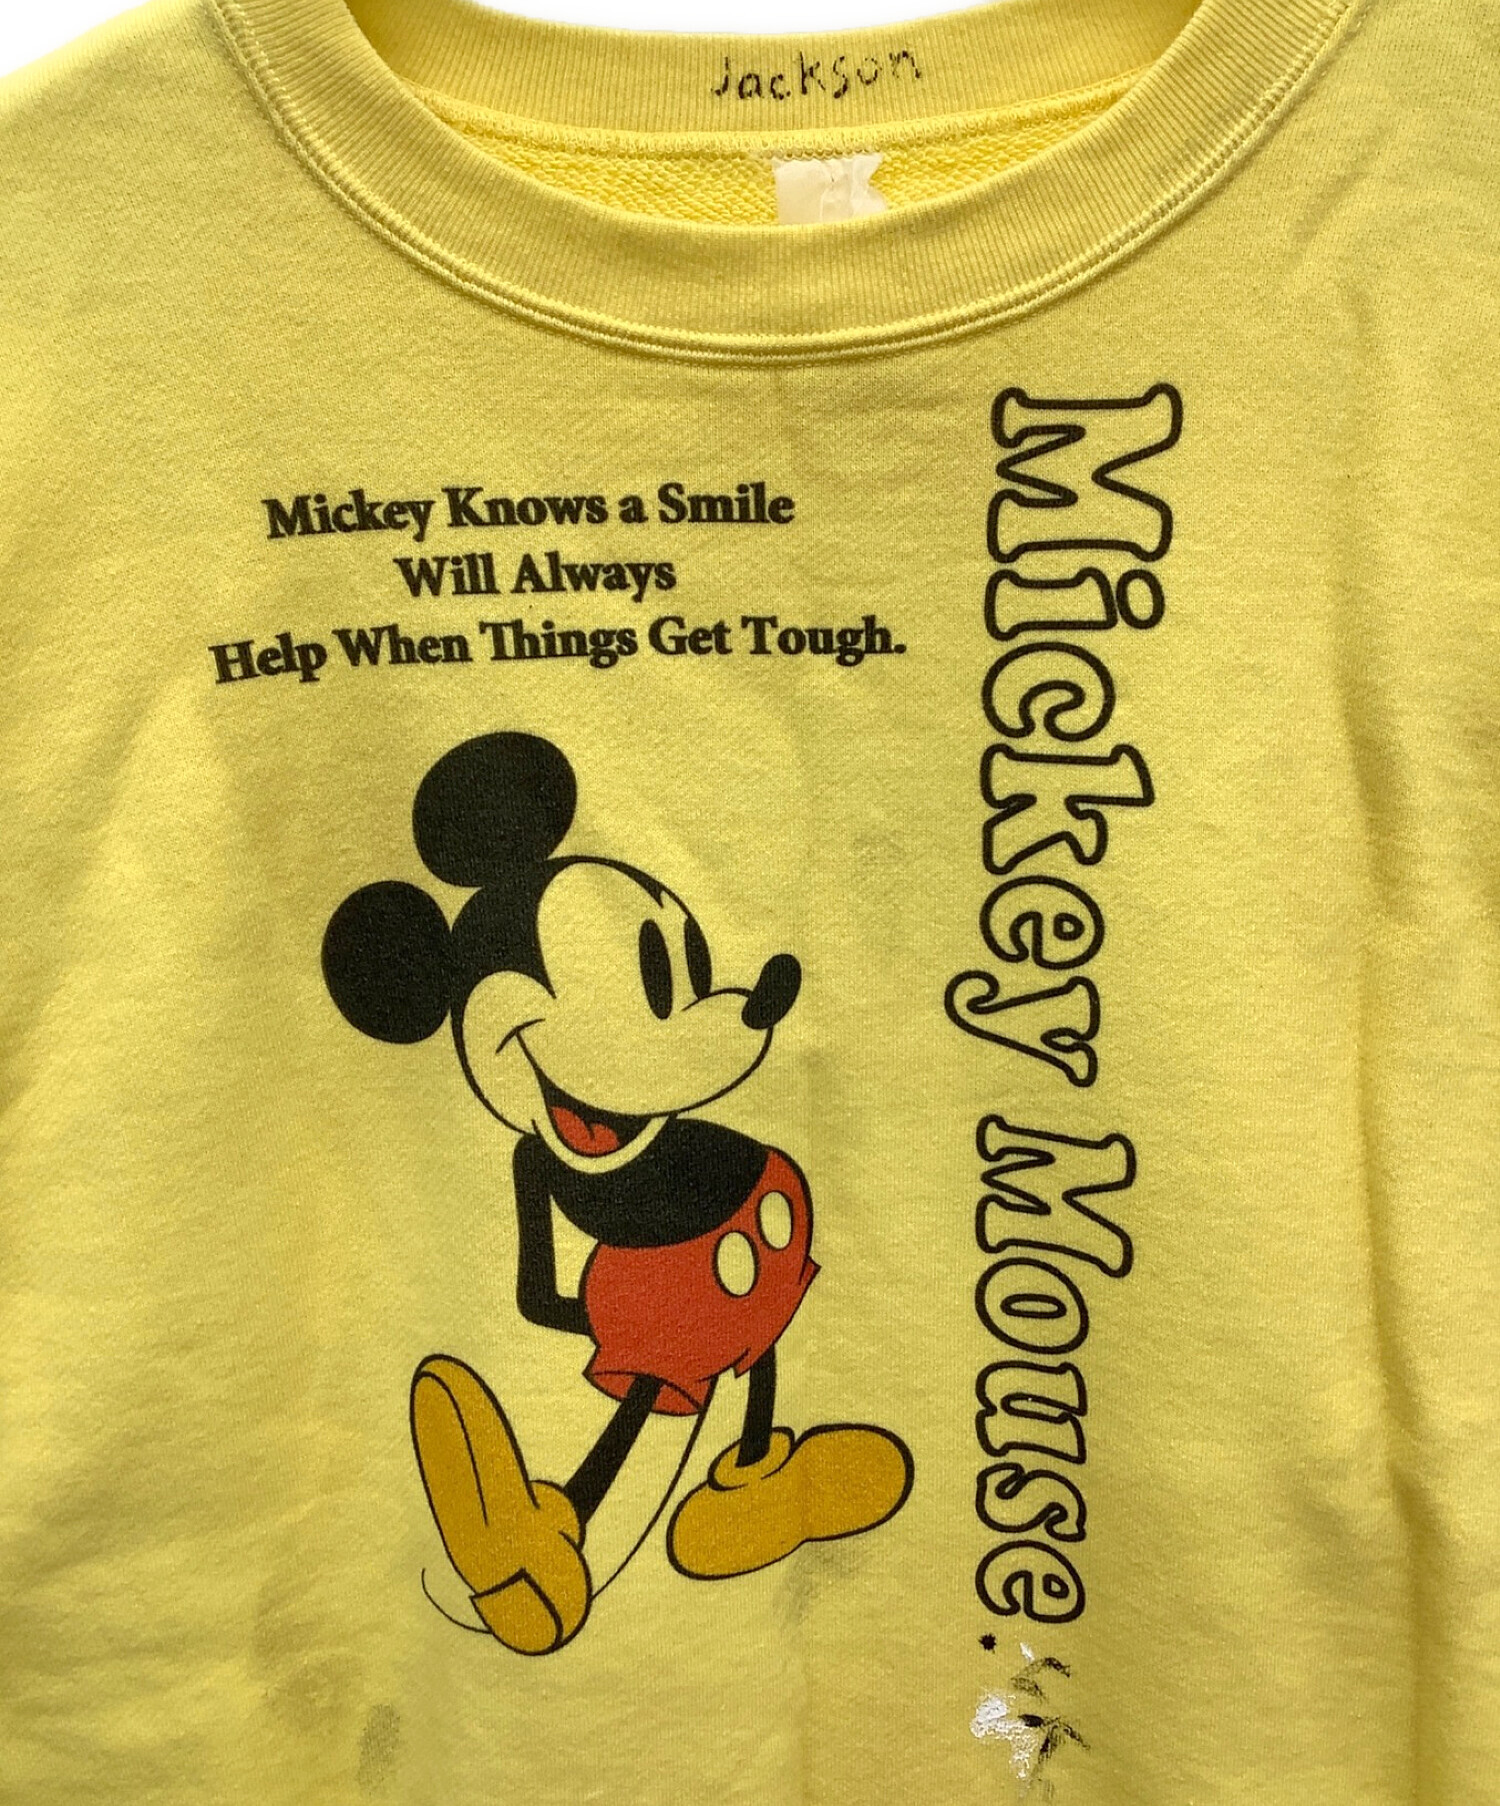 Disney×JACKSON MATISSE (ディズニー×ジャクソン マティス) ヴィンテージ加工ミッキーマウススウェット イエロー サイズ:M  未使用品